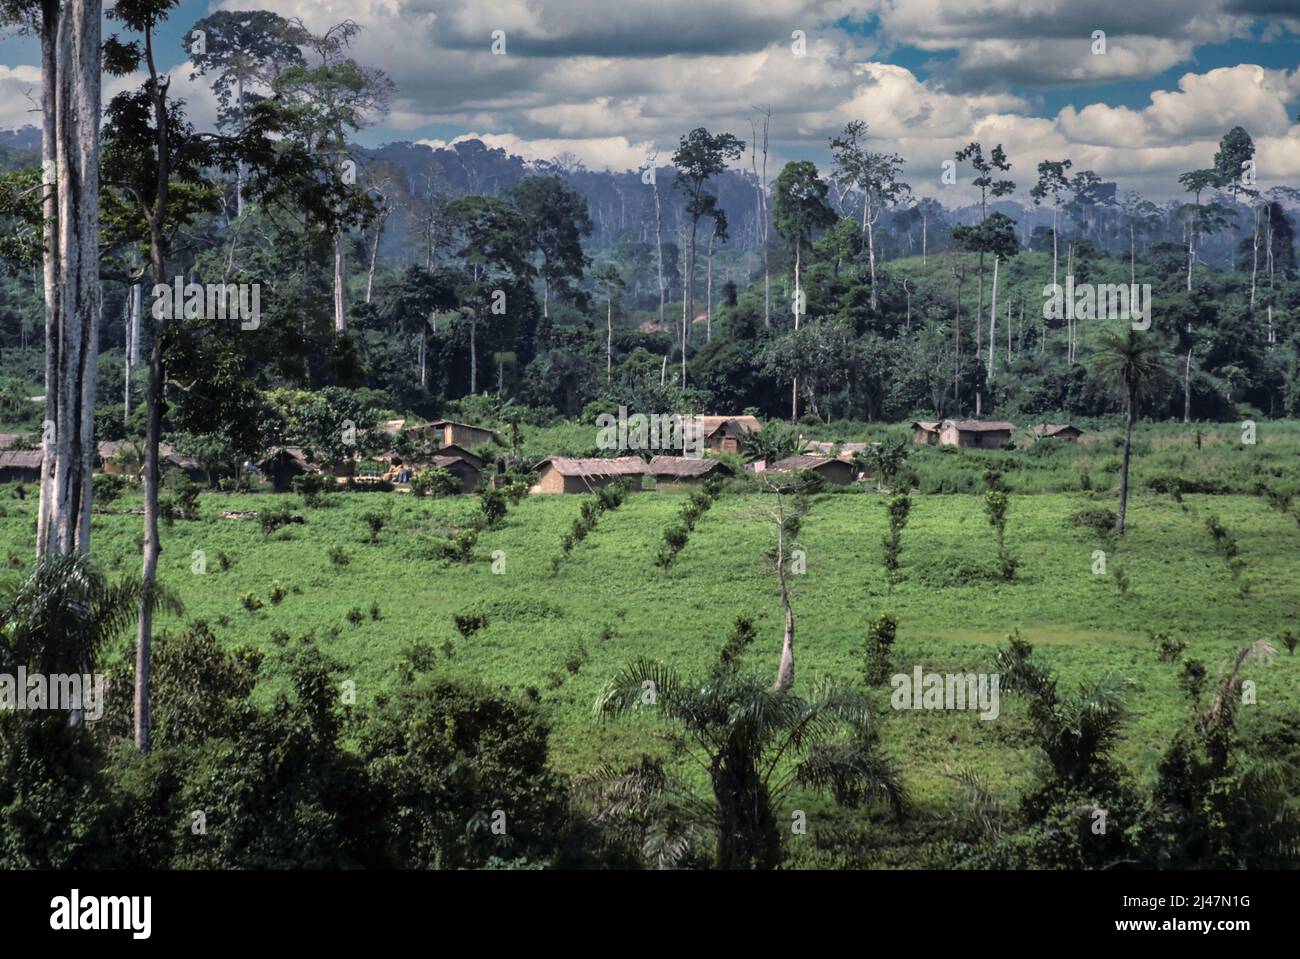 Costa d'Avorio occidentale, Costa d'Avorio, Africa occidentale - deforestazione per l'agricoltura commerciale. Foresta sgomberata per coltivazione di alberi di lime. Lavoratori agricoli h Foto Stock